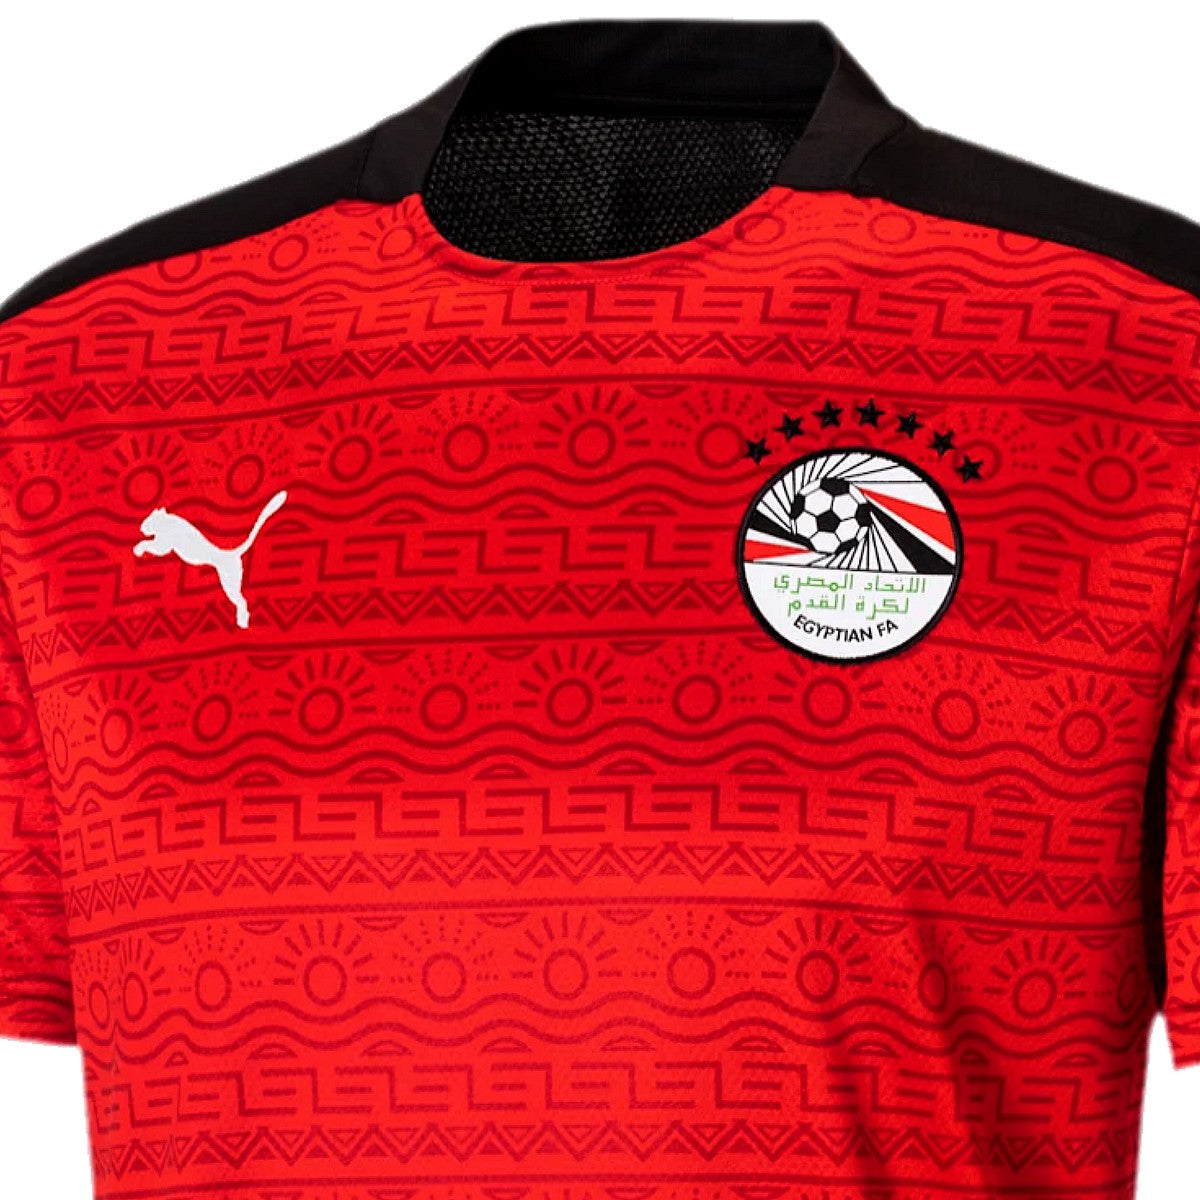 Egypt soccer jersey 2021/22 - Puma SoccerTracksuits.com